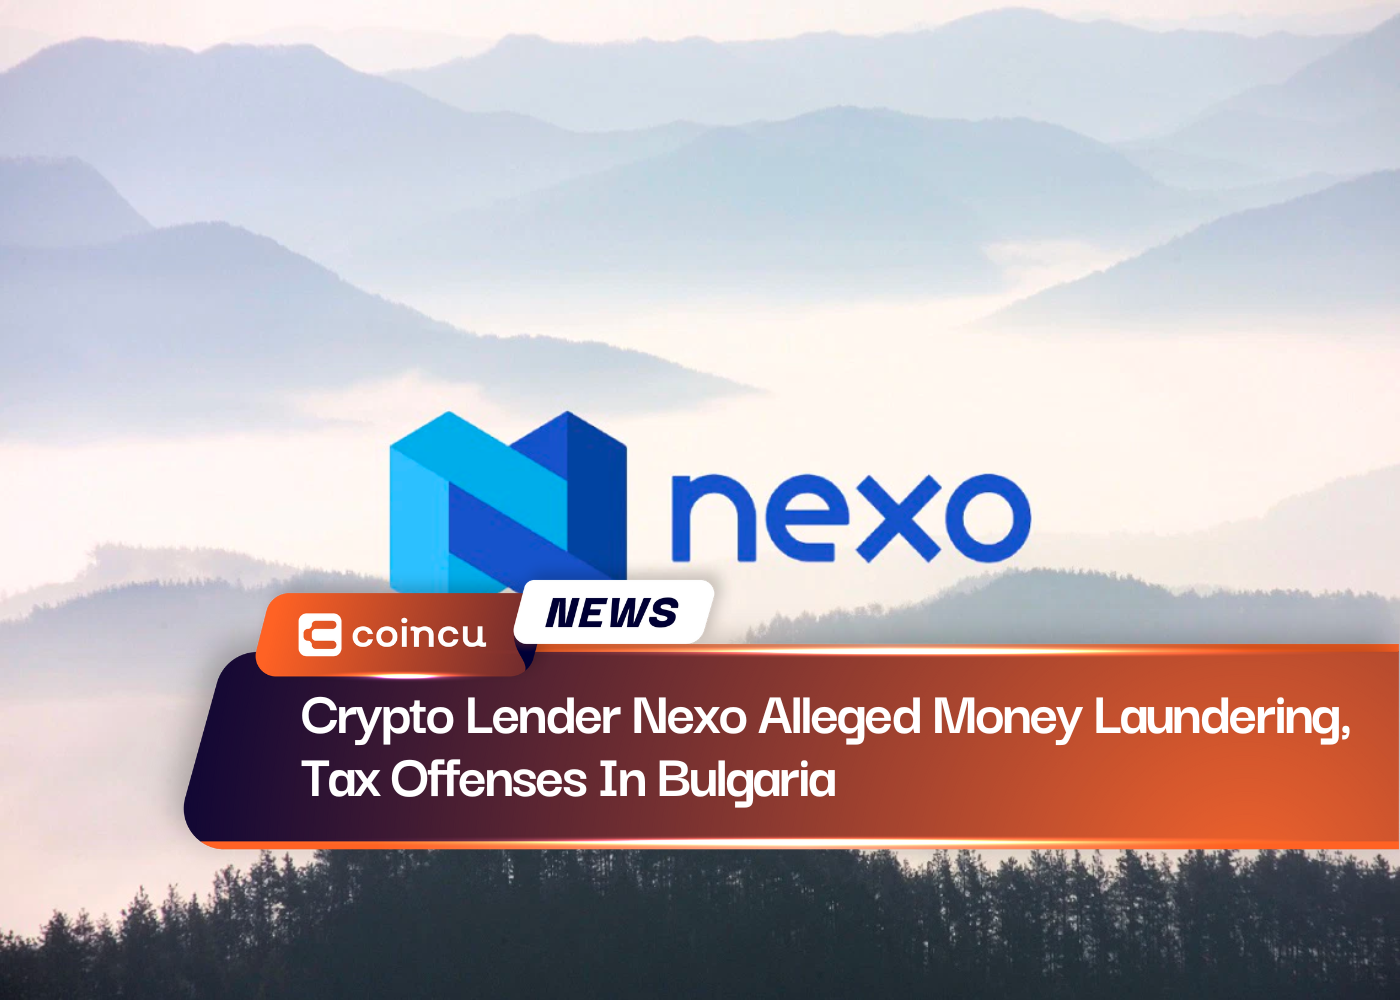 Крипто-кредитор Nexo обвиняется в отмывании денег и налоговых правонарушениях в Болгарии